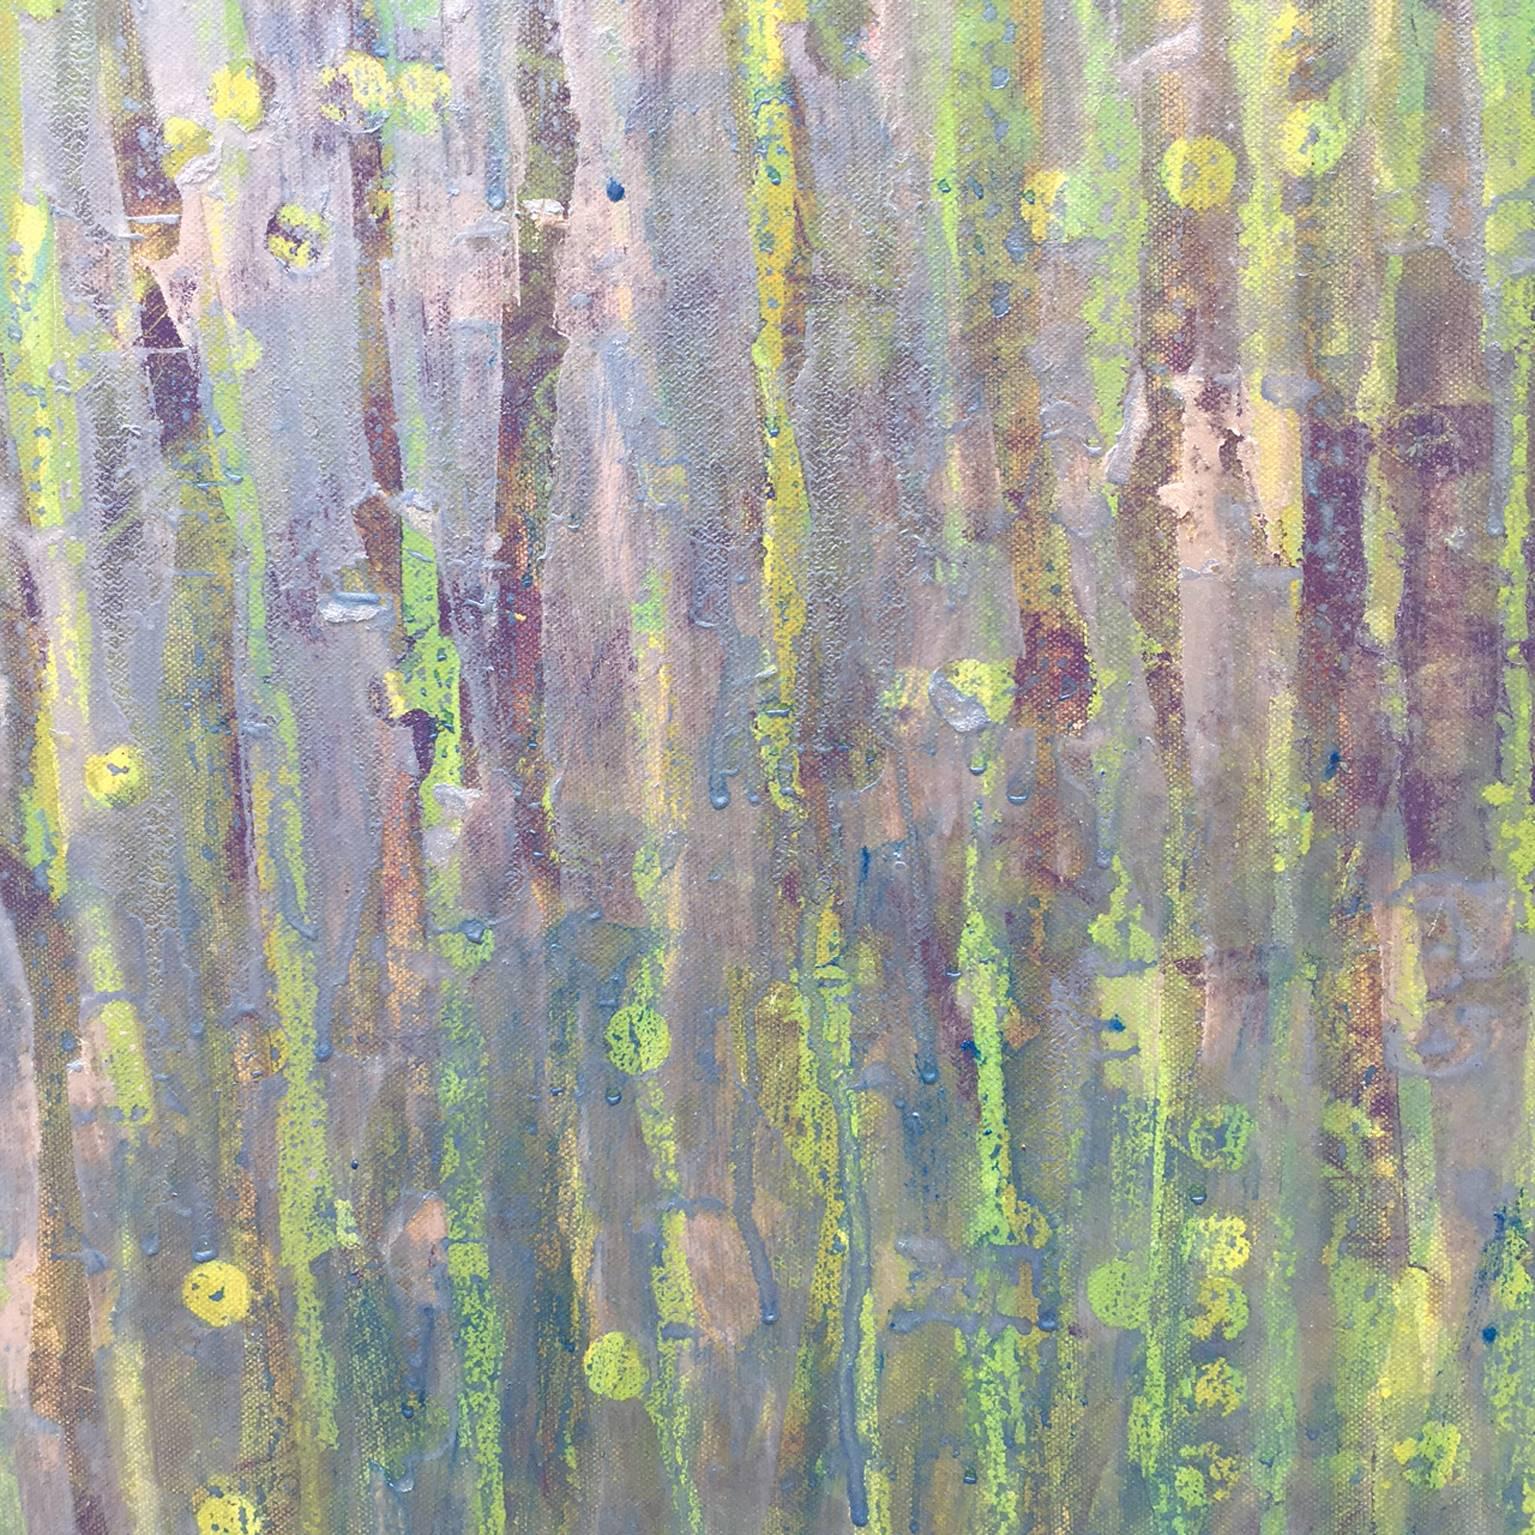 Dieses abstrakte Gemälde von Christine Averill-Green ist eine wunderschöne Kombination aus Grün-, Blau- und Violetttönen. Die langen, organischen Streifen, aus denen dieses zeitgenössische Stück besteht, erinnern an Ranken, und die verwendete